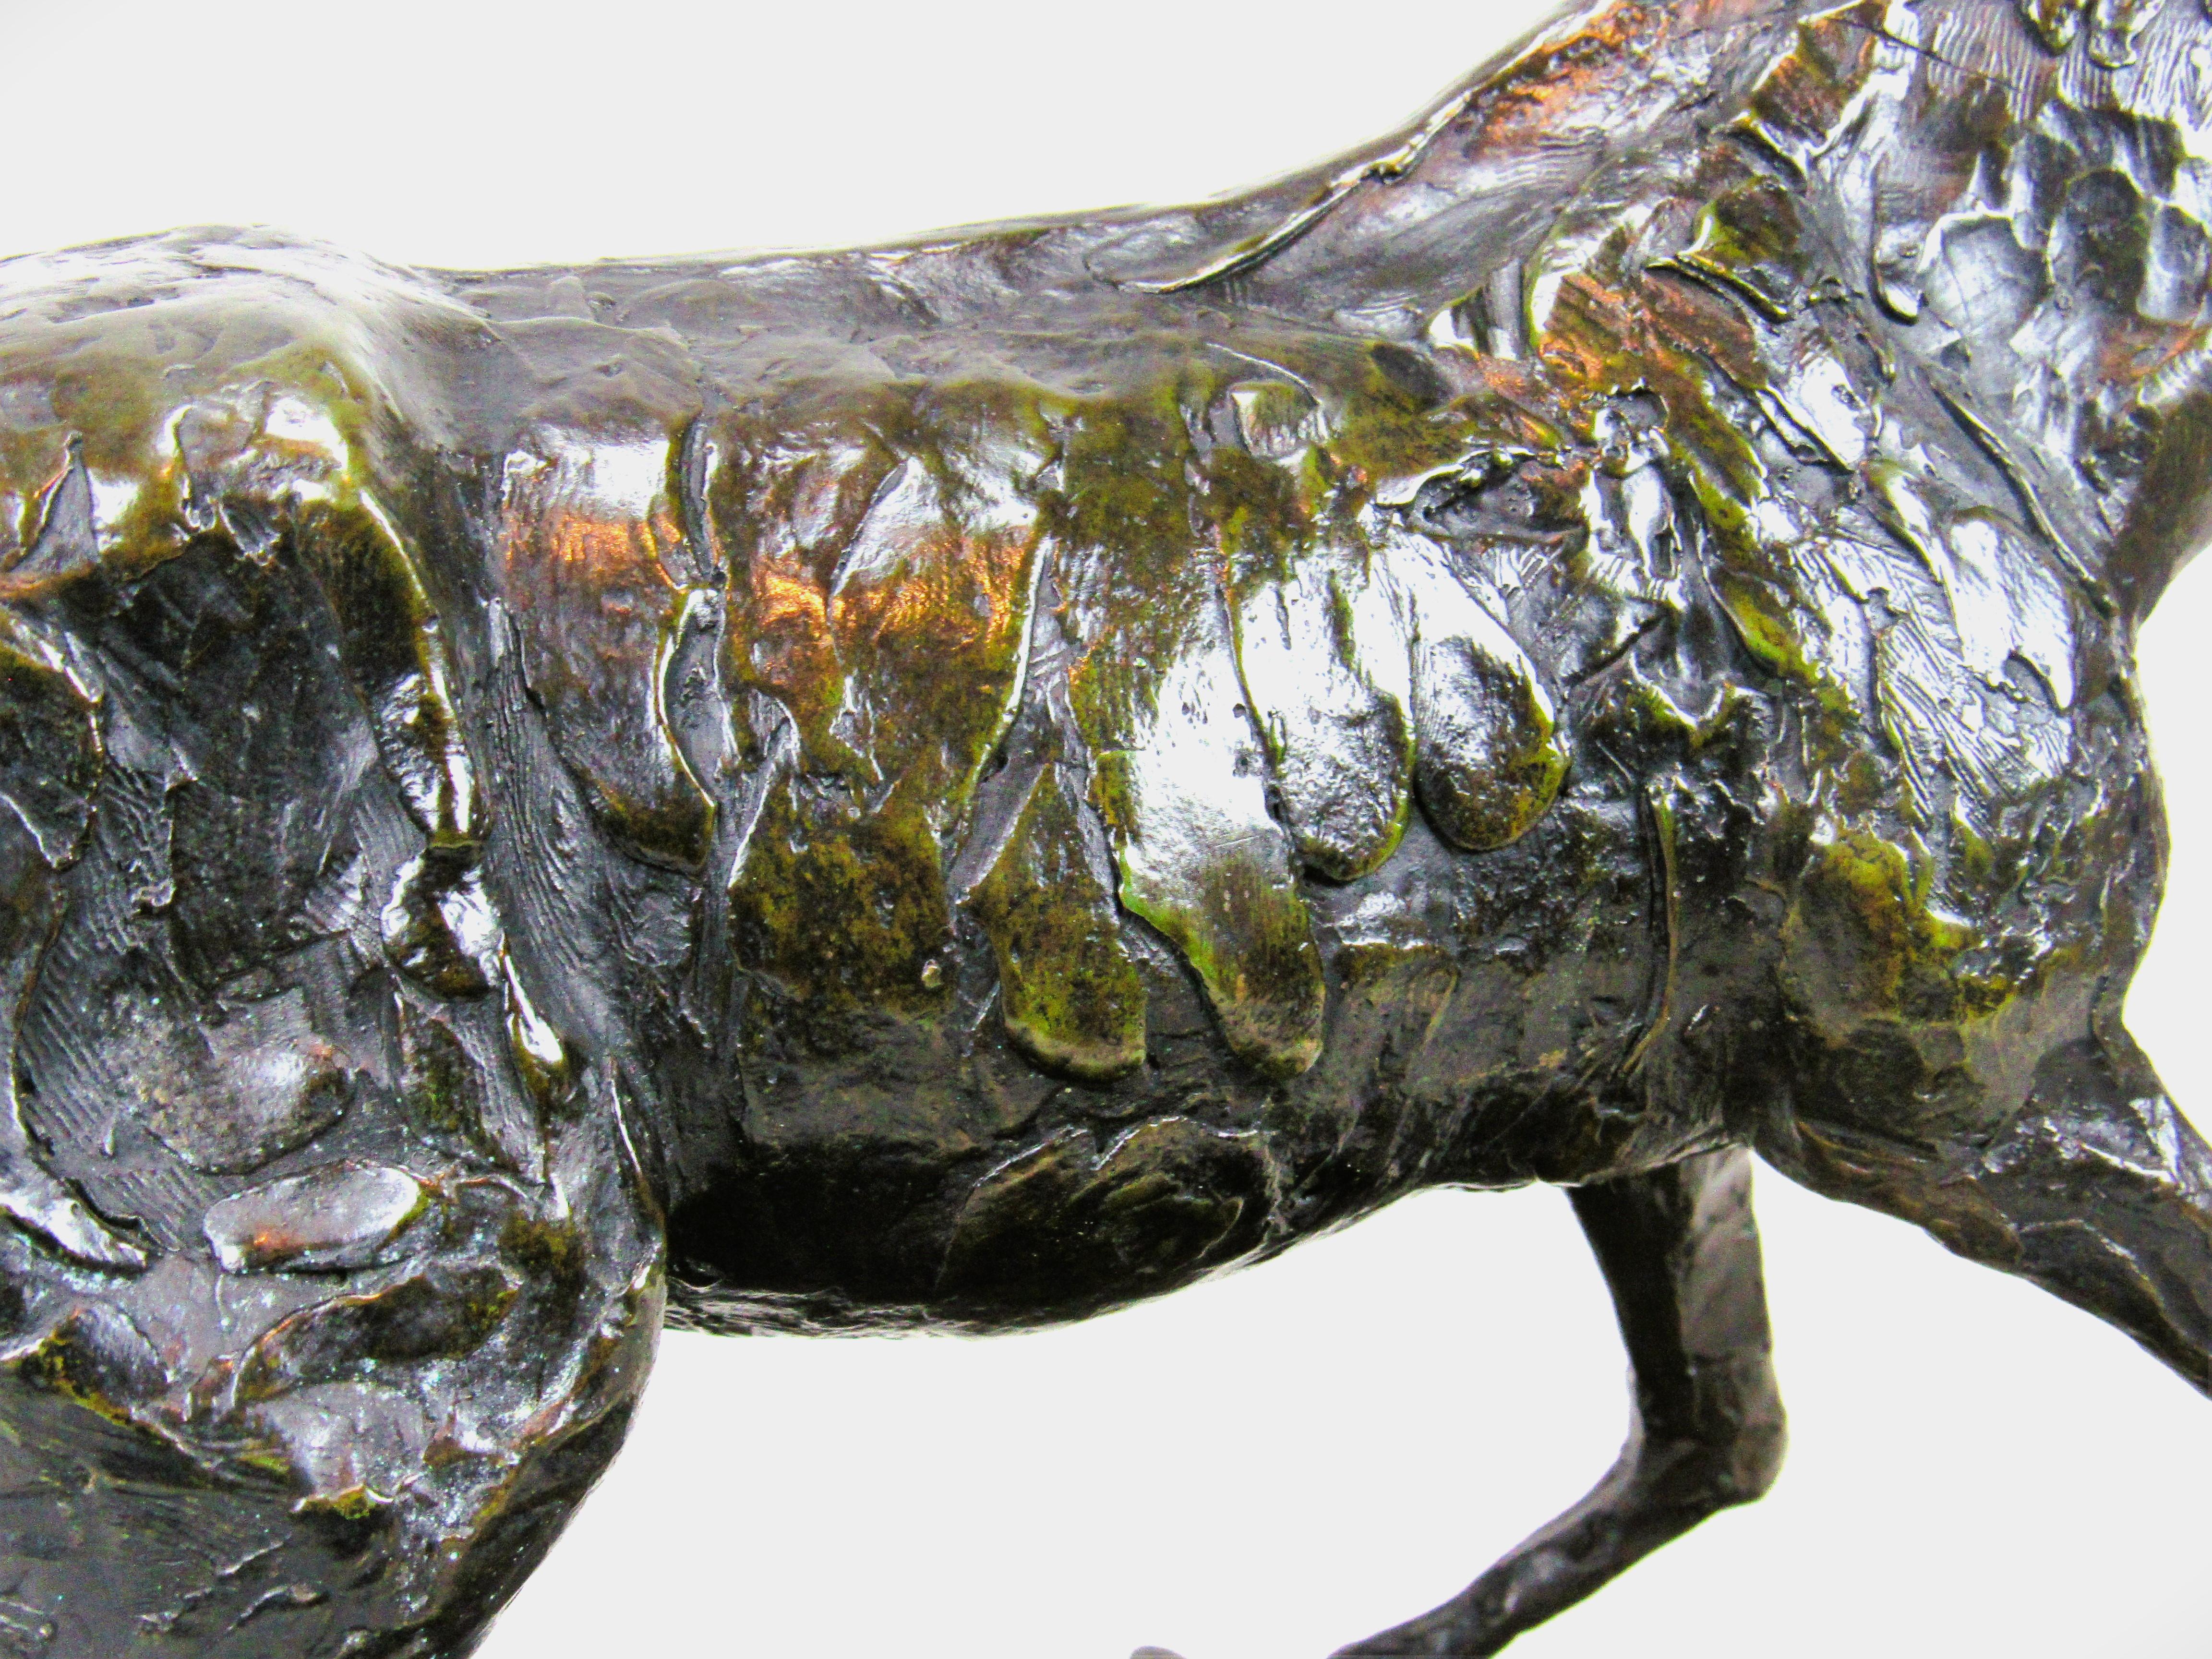 Cheval franchissant un obstacle (œuvre numéro 48)

Bronze à patine vert brun foncé portant le cachet de la signature 